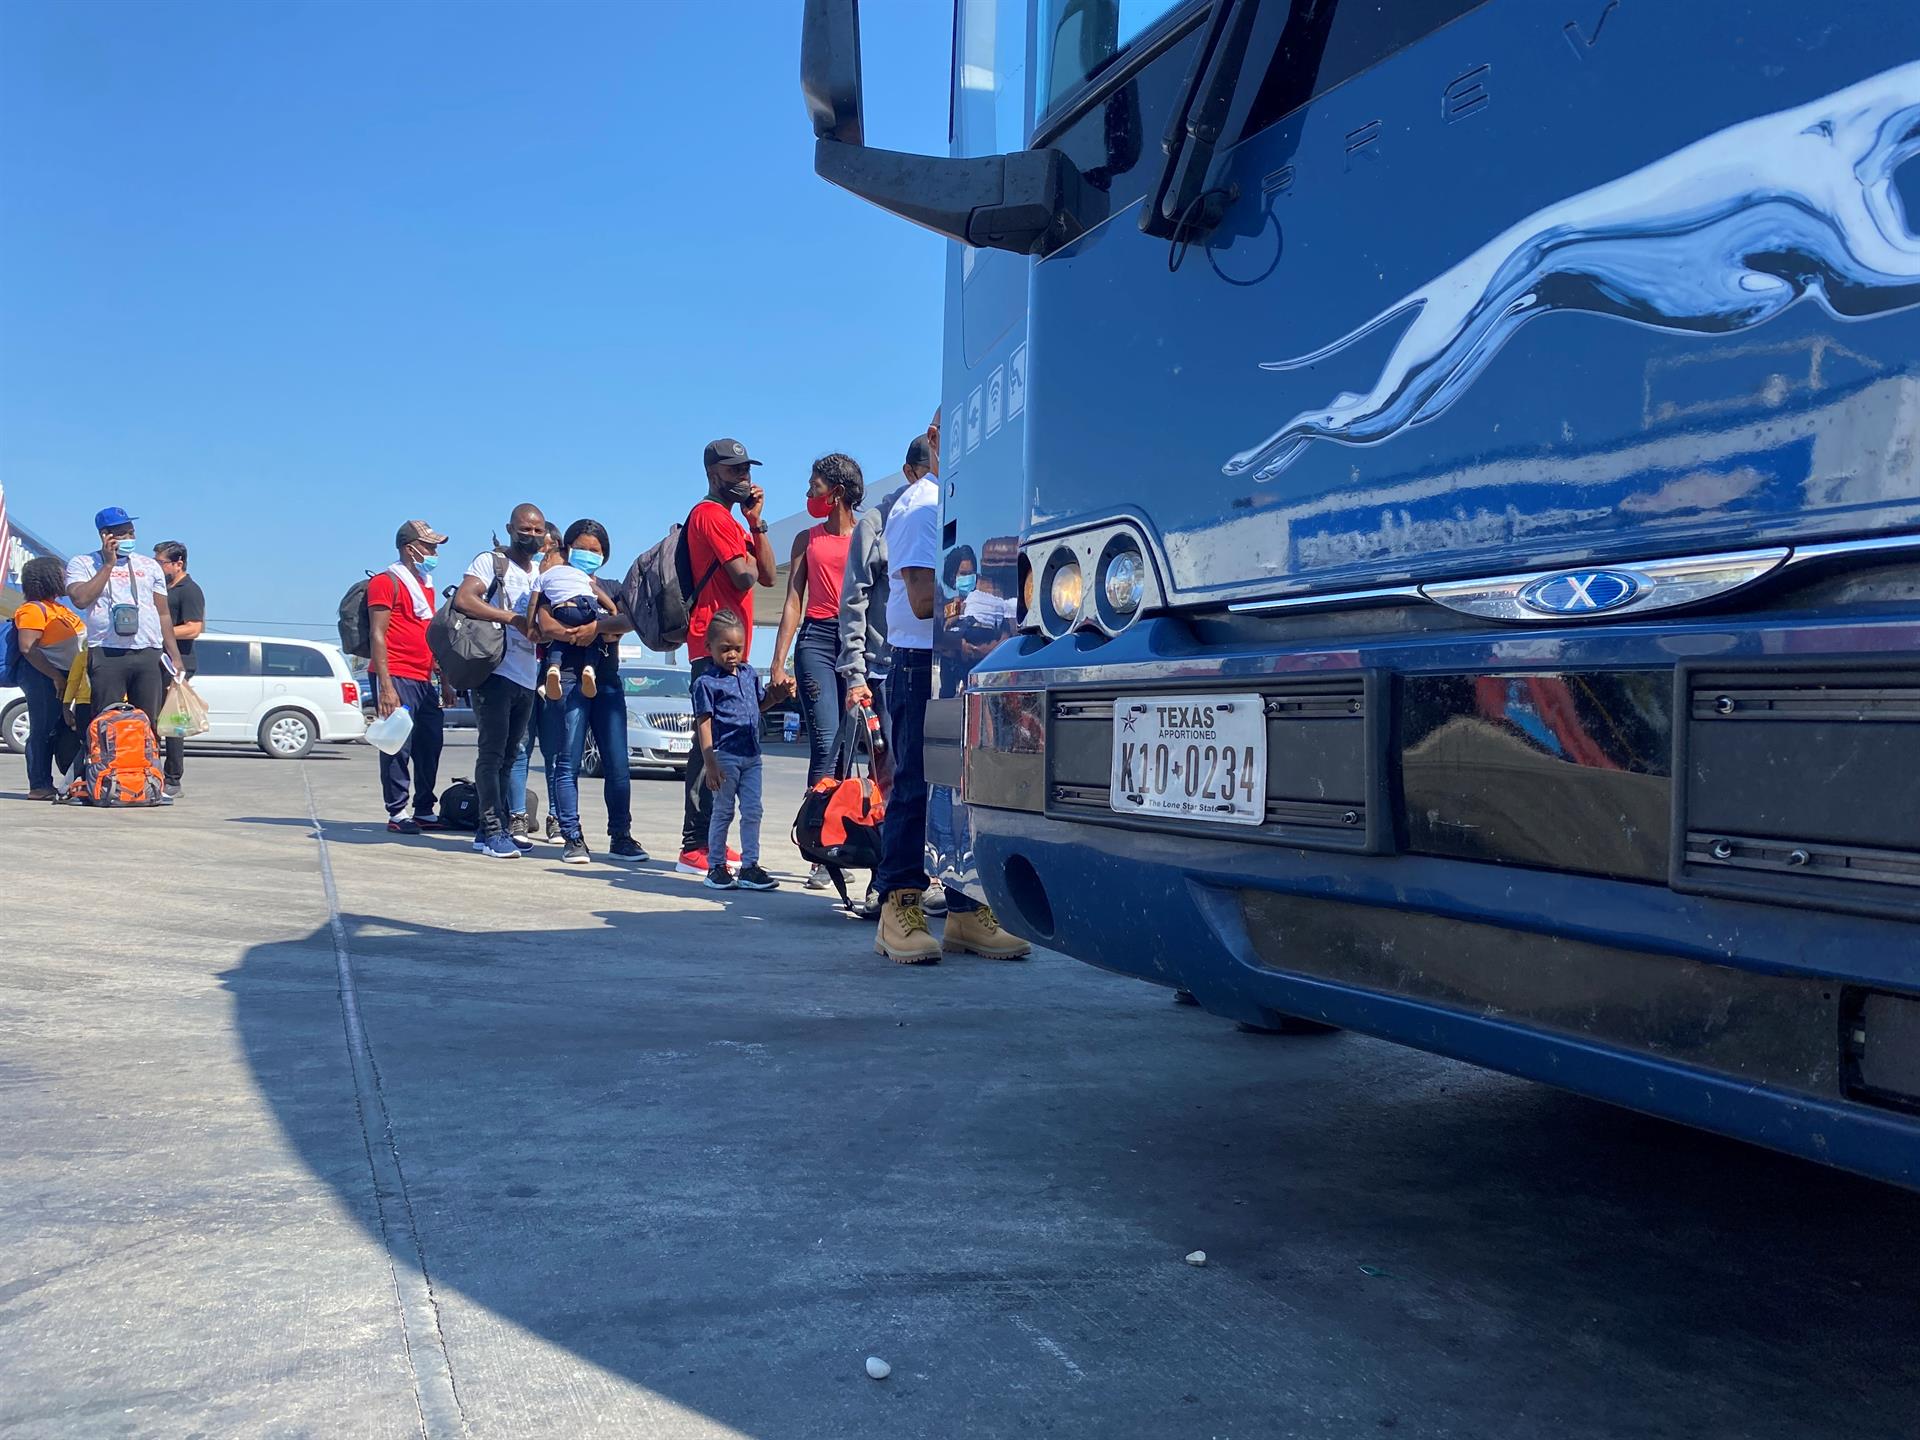 Migrantes haitianos esperan para tomar un bus, imagen de archivo. EFE/ Alex Segura
